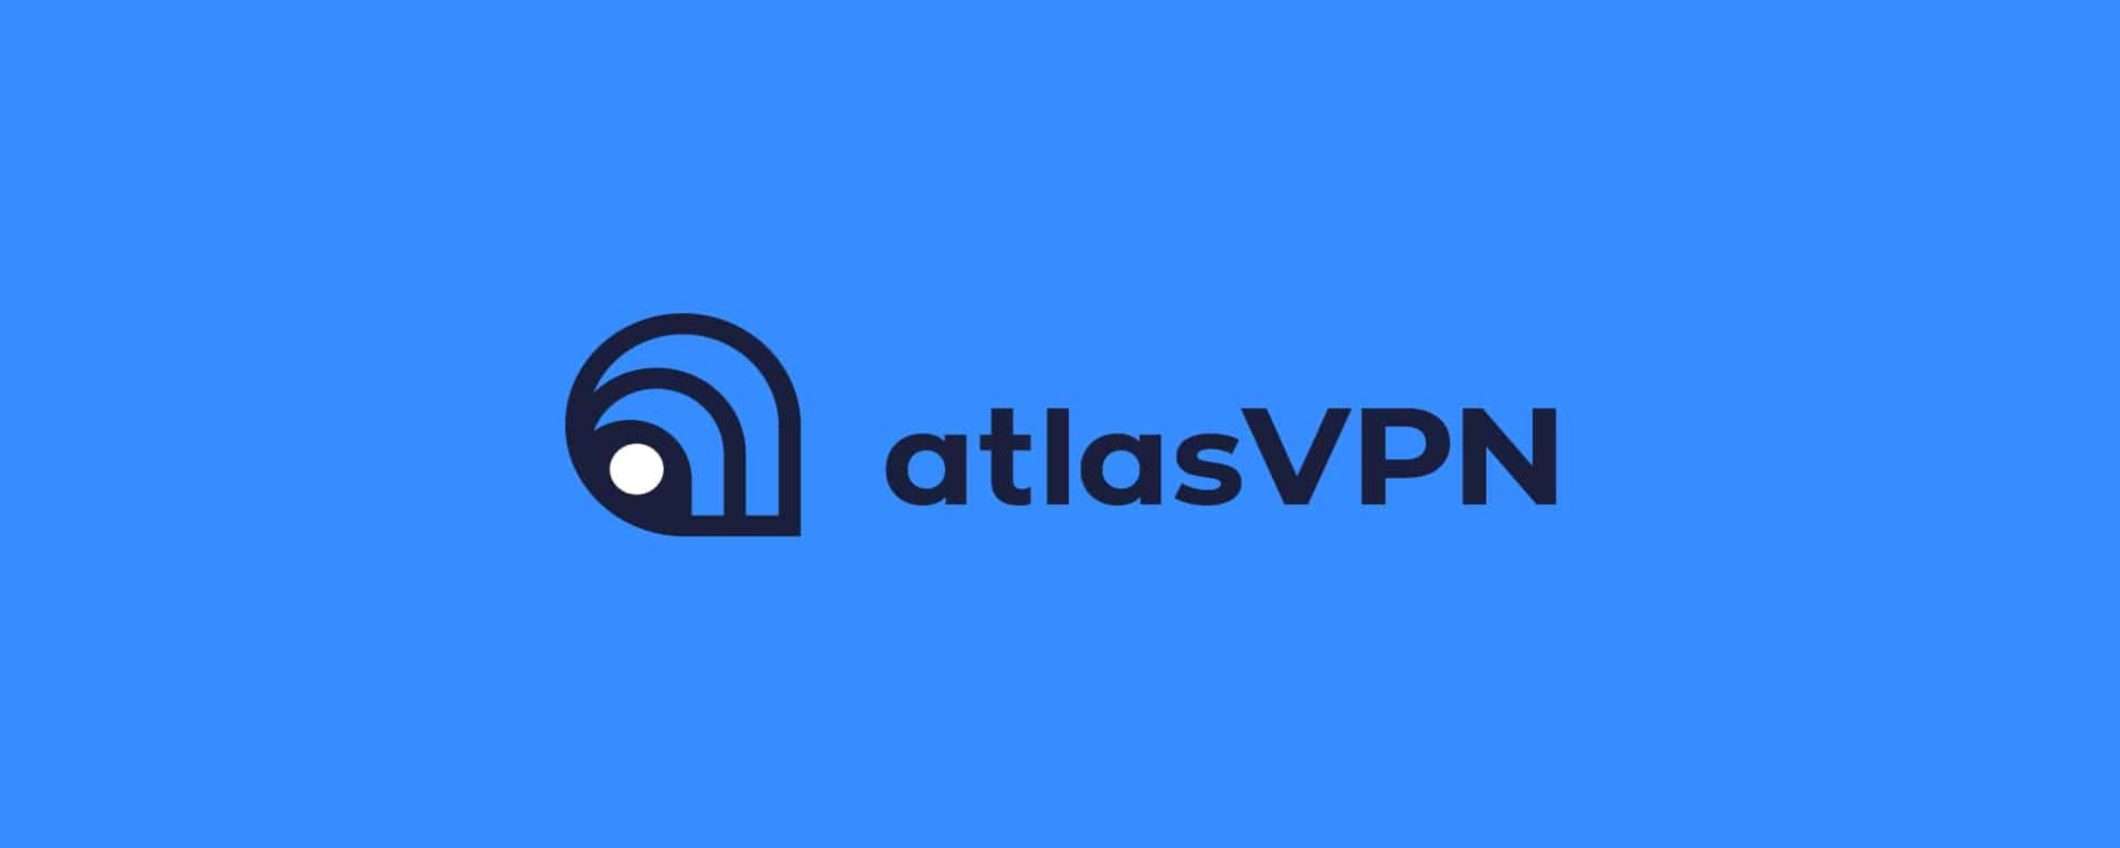 Naviga, lavora e gioca senza limiti con Atlas VPN: ti costo meno di un gelato al mese